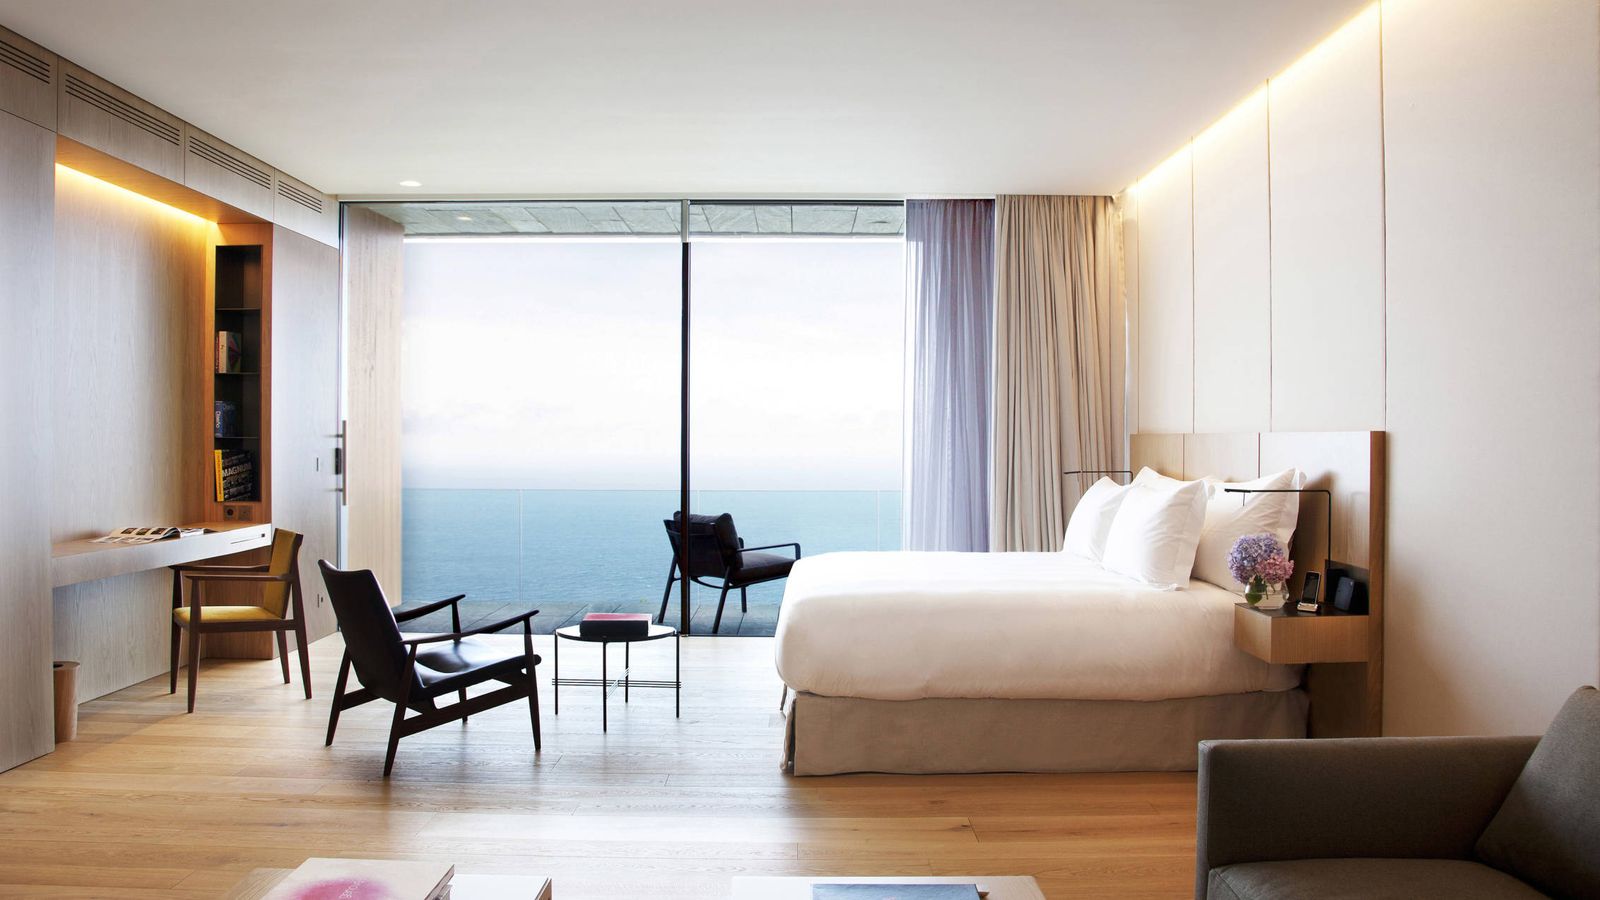 Foto: Una habitación del hotel Akelarre y el mar.